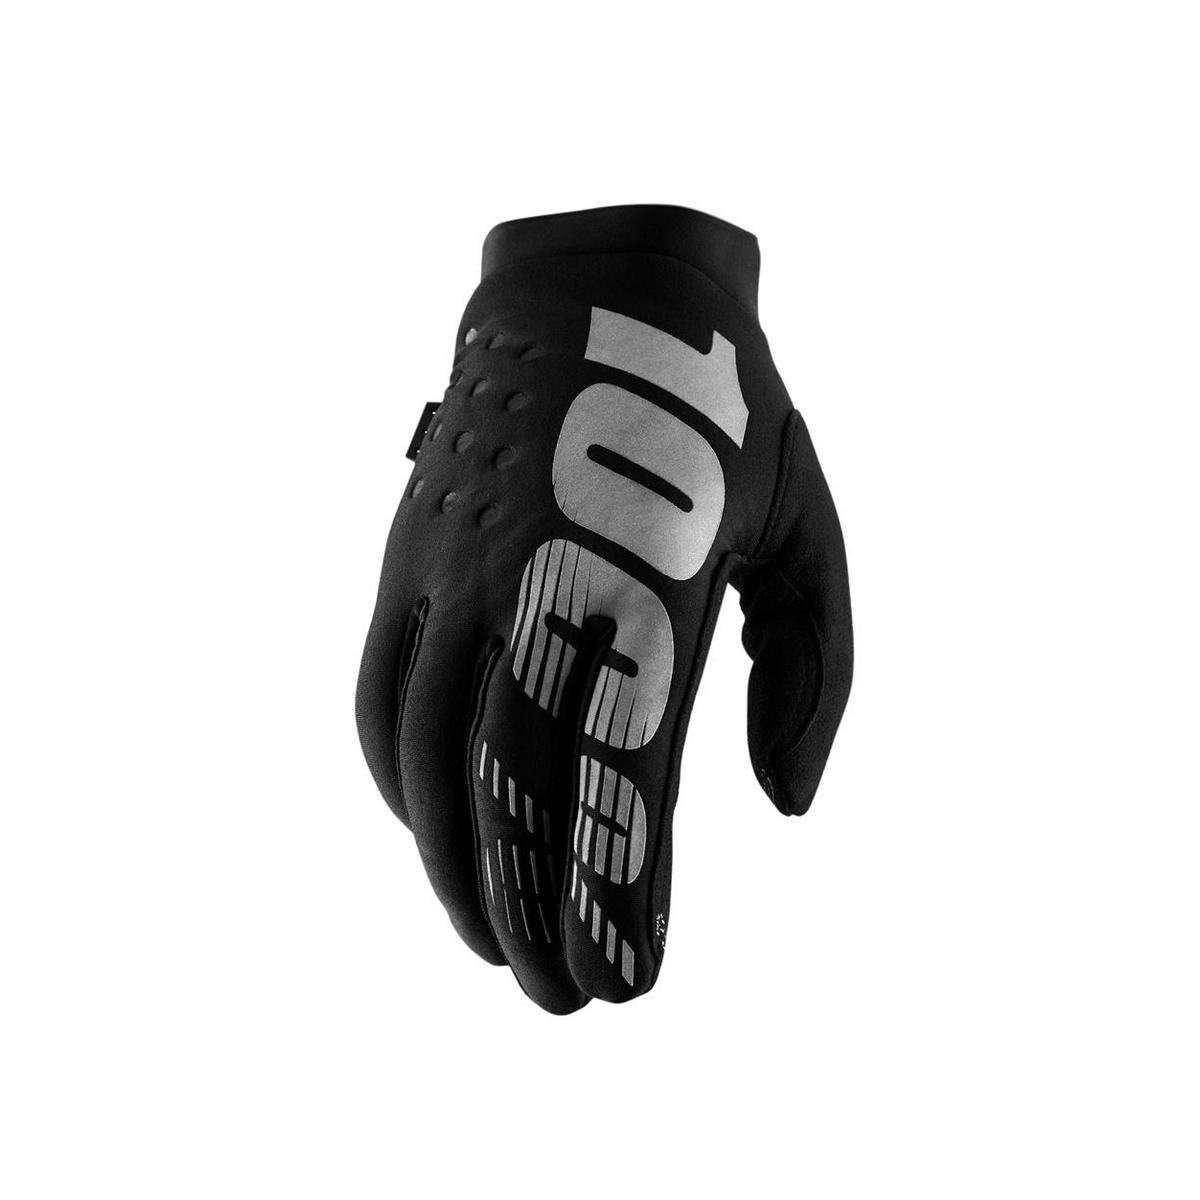 Winter gloves brisker black size XXL